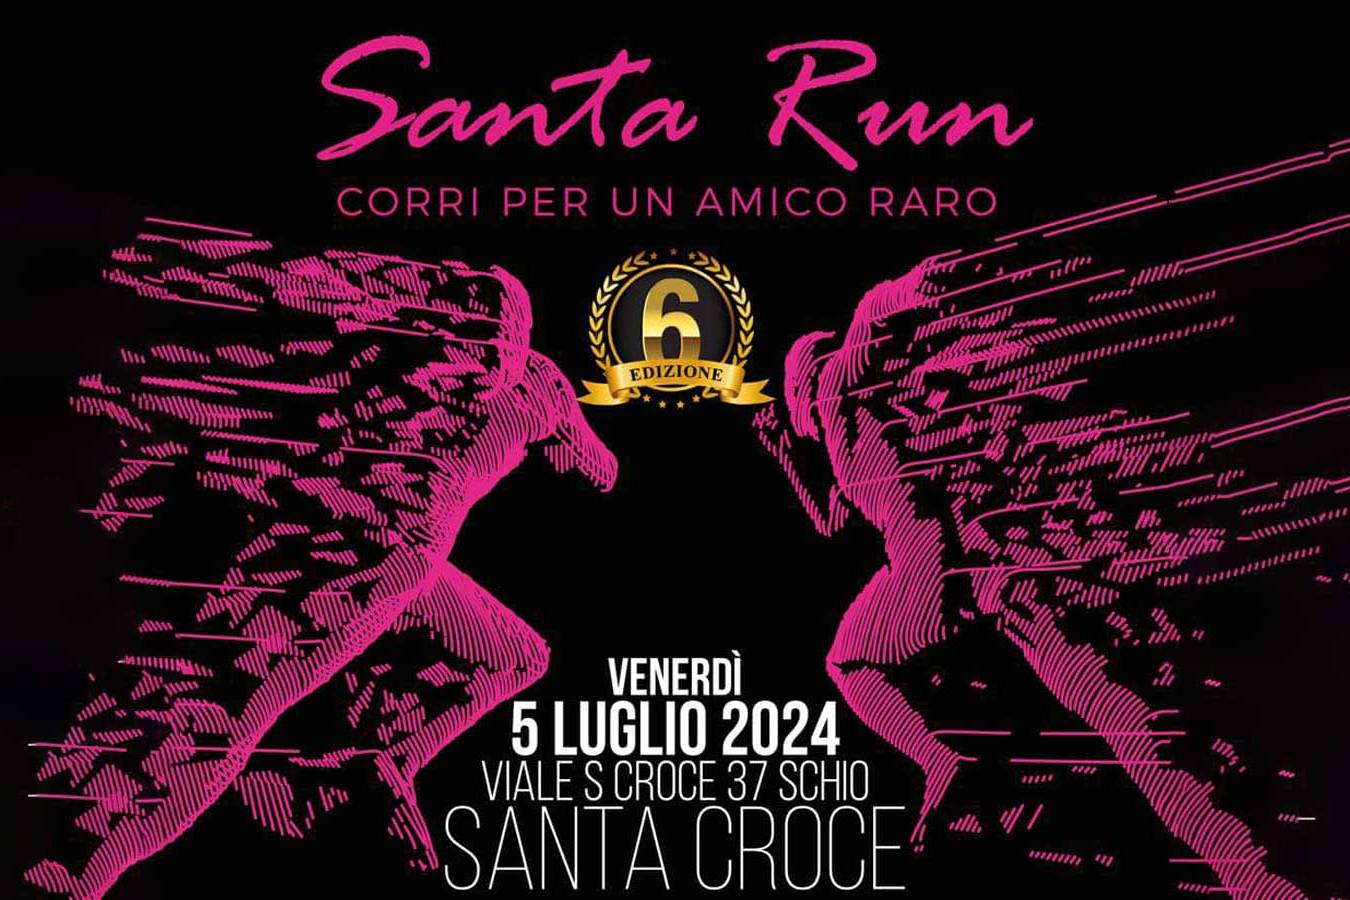 Santa Run 2024 "CORRI PER UN AMICO RARO"